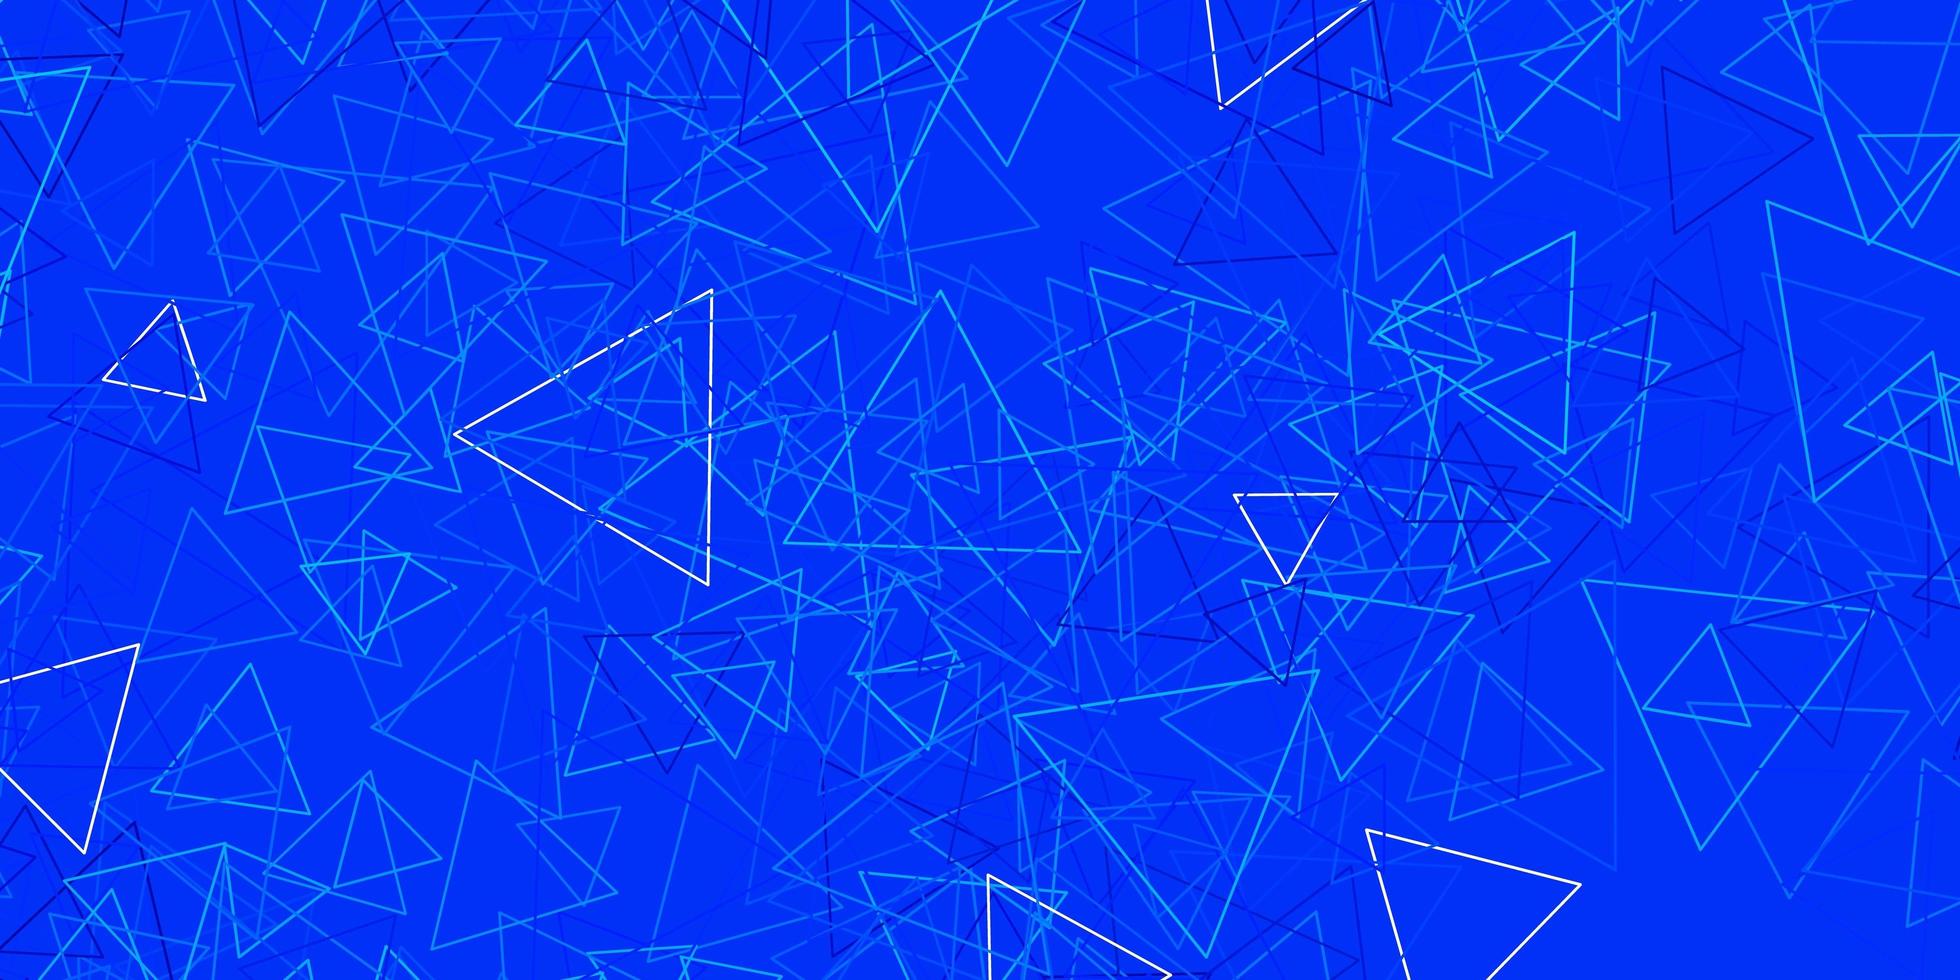 mörkblå vektorlayout med triangelformer. vektor